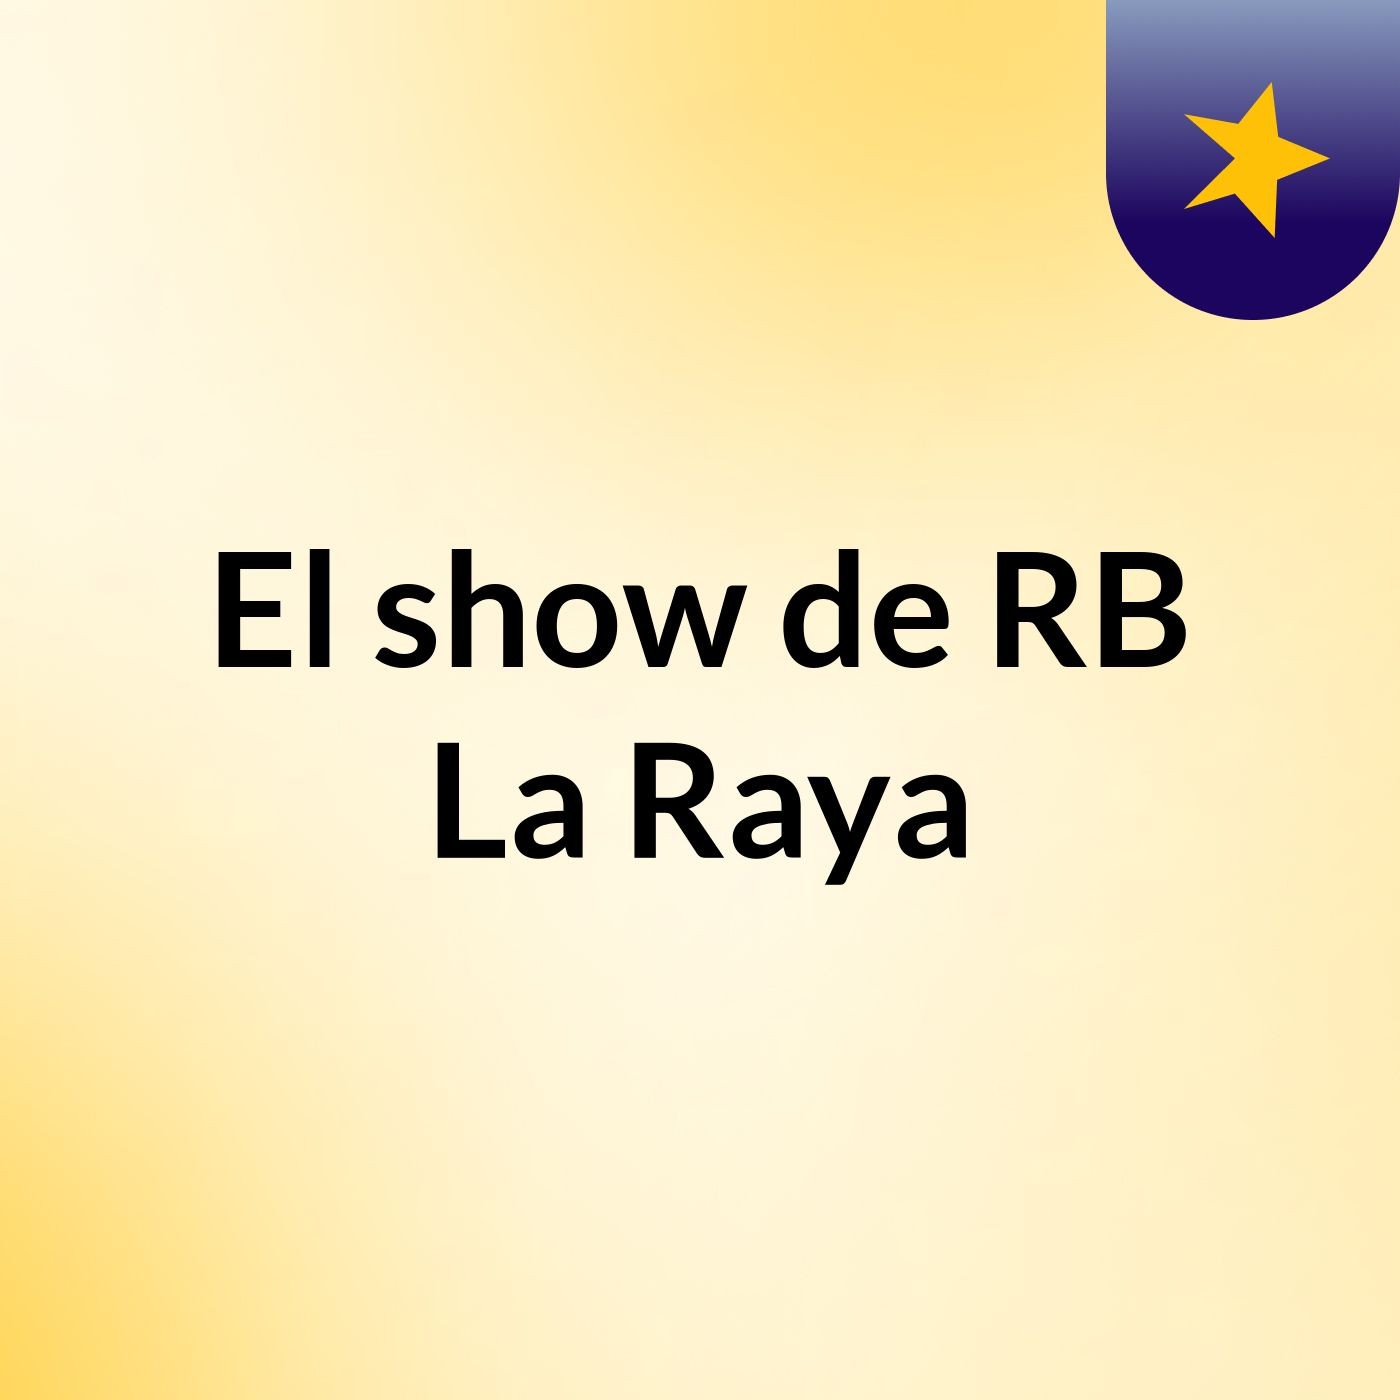 El show de RB La Raya